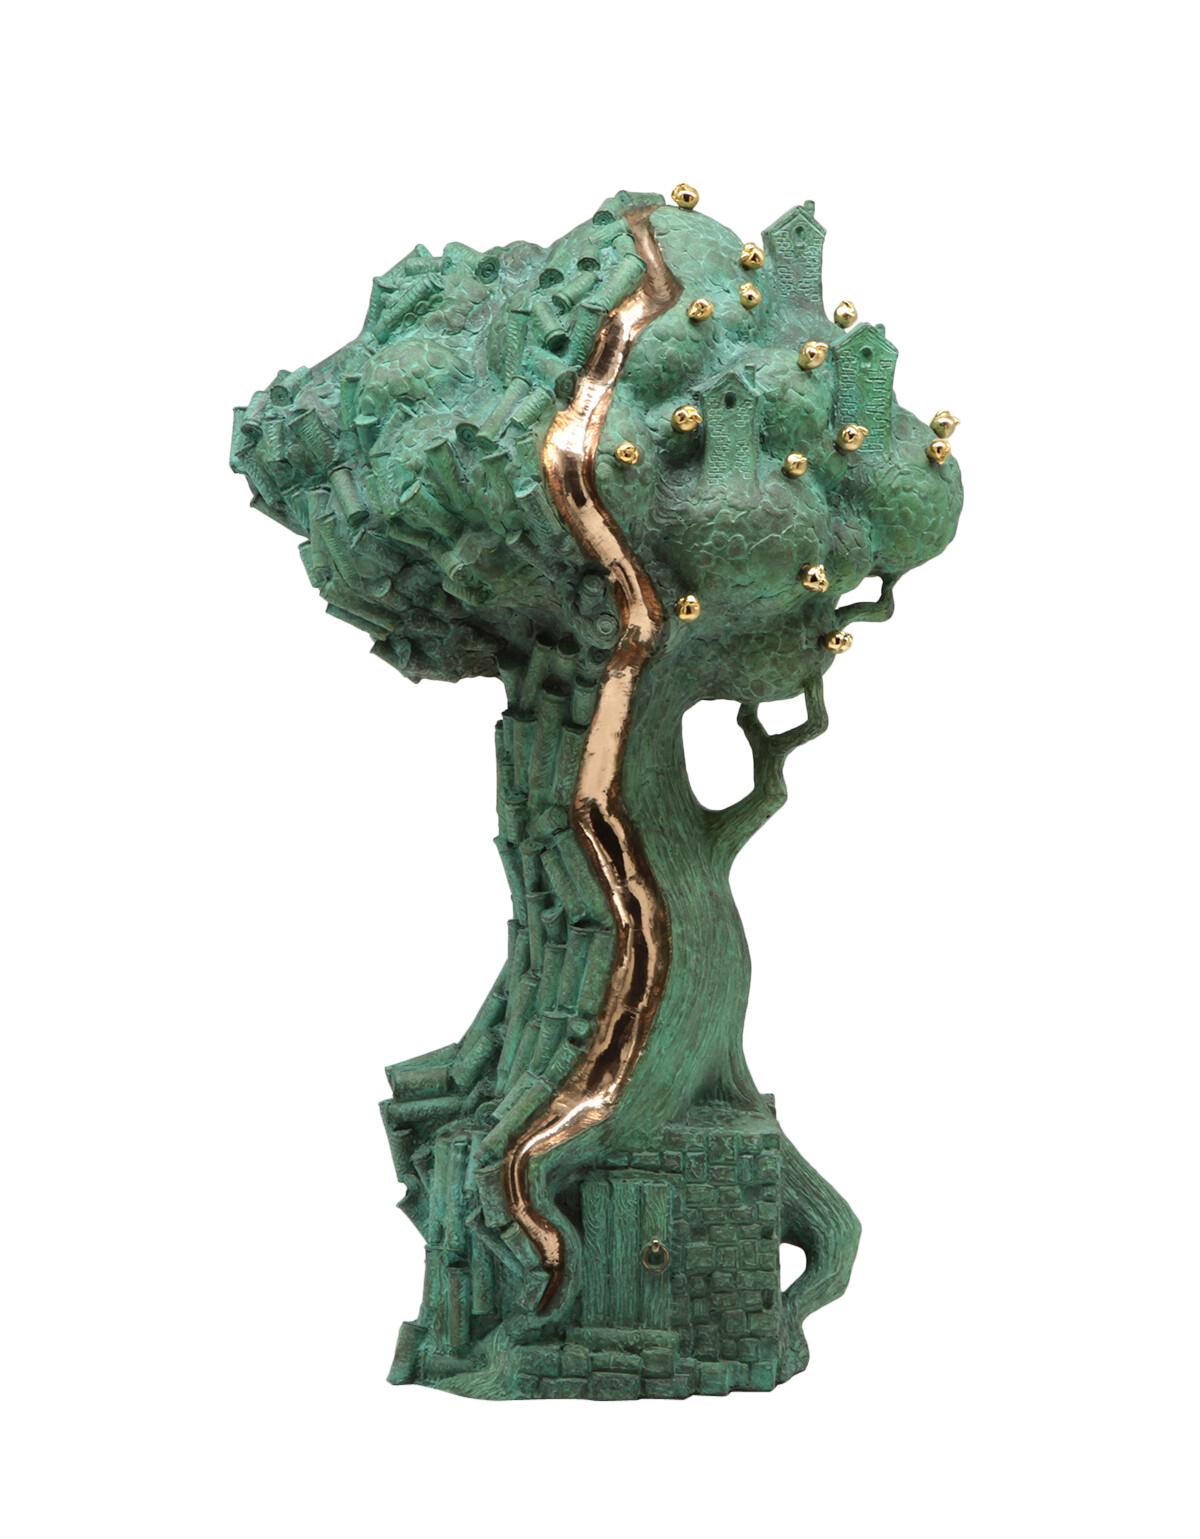 Volodymyr MYKYTENKO Figurative Sculpture - Tree of Life, Bronze Sculpture by Volodymyr Mykytenko, 2022